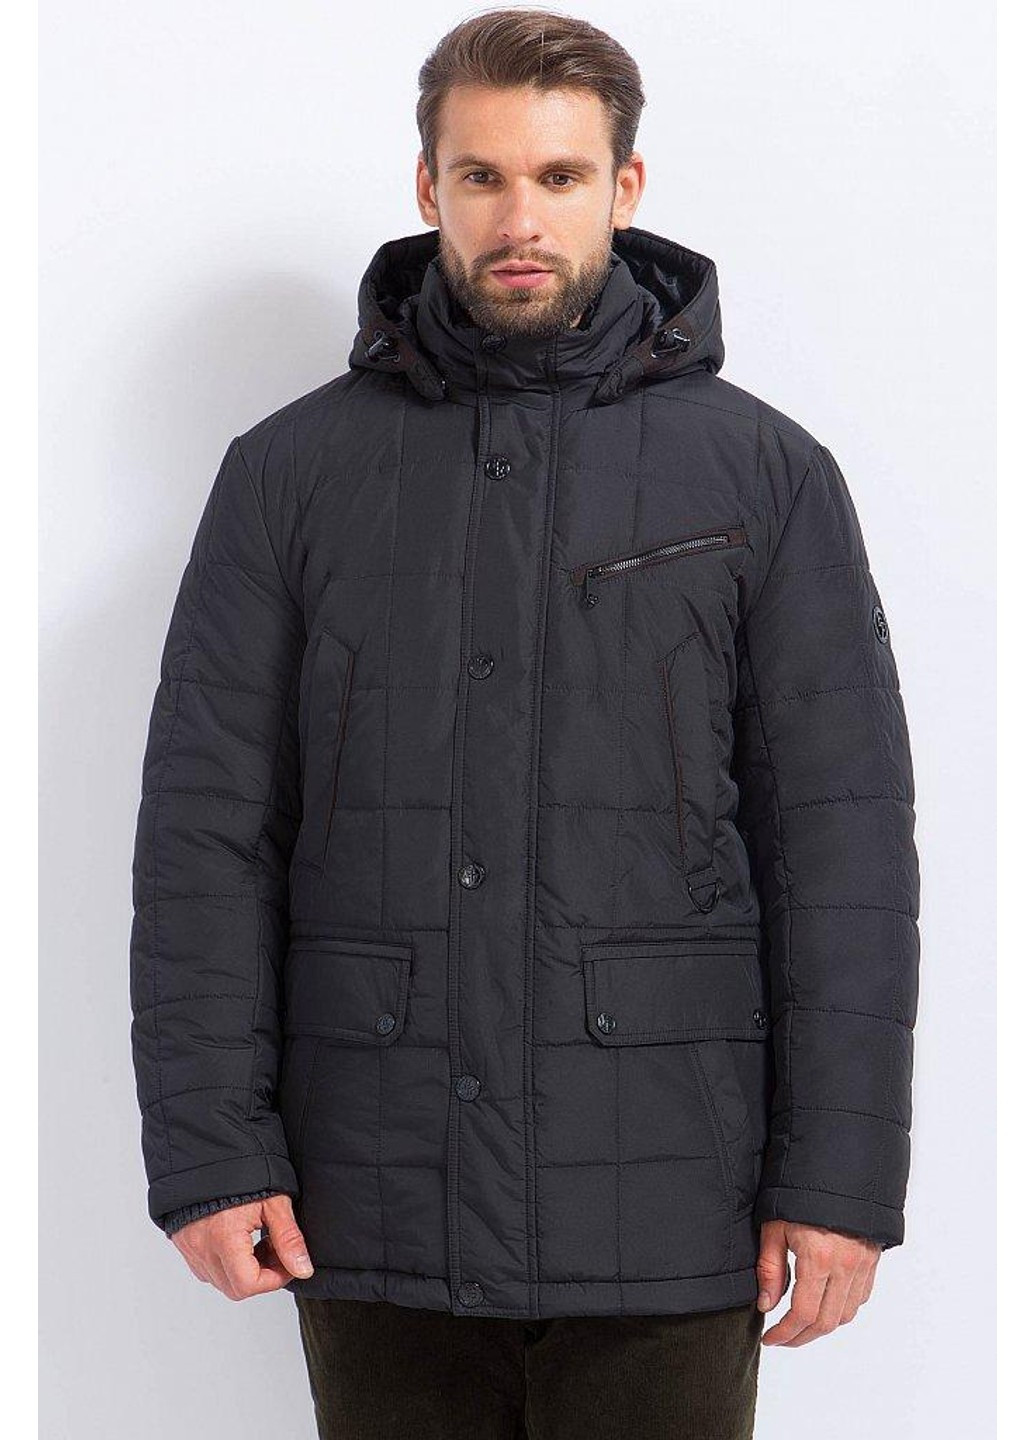 Черная зимняя зимняя куртка a17-21017-200 Finn Flare